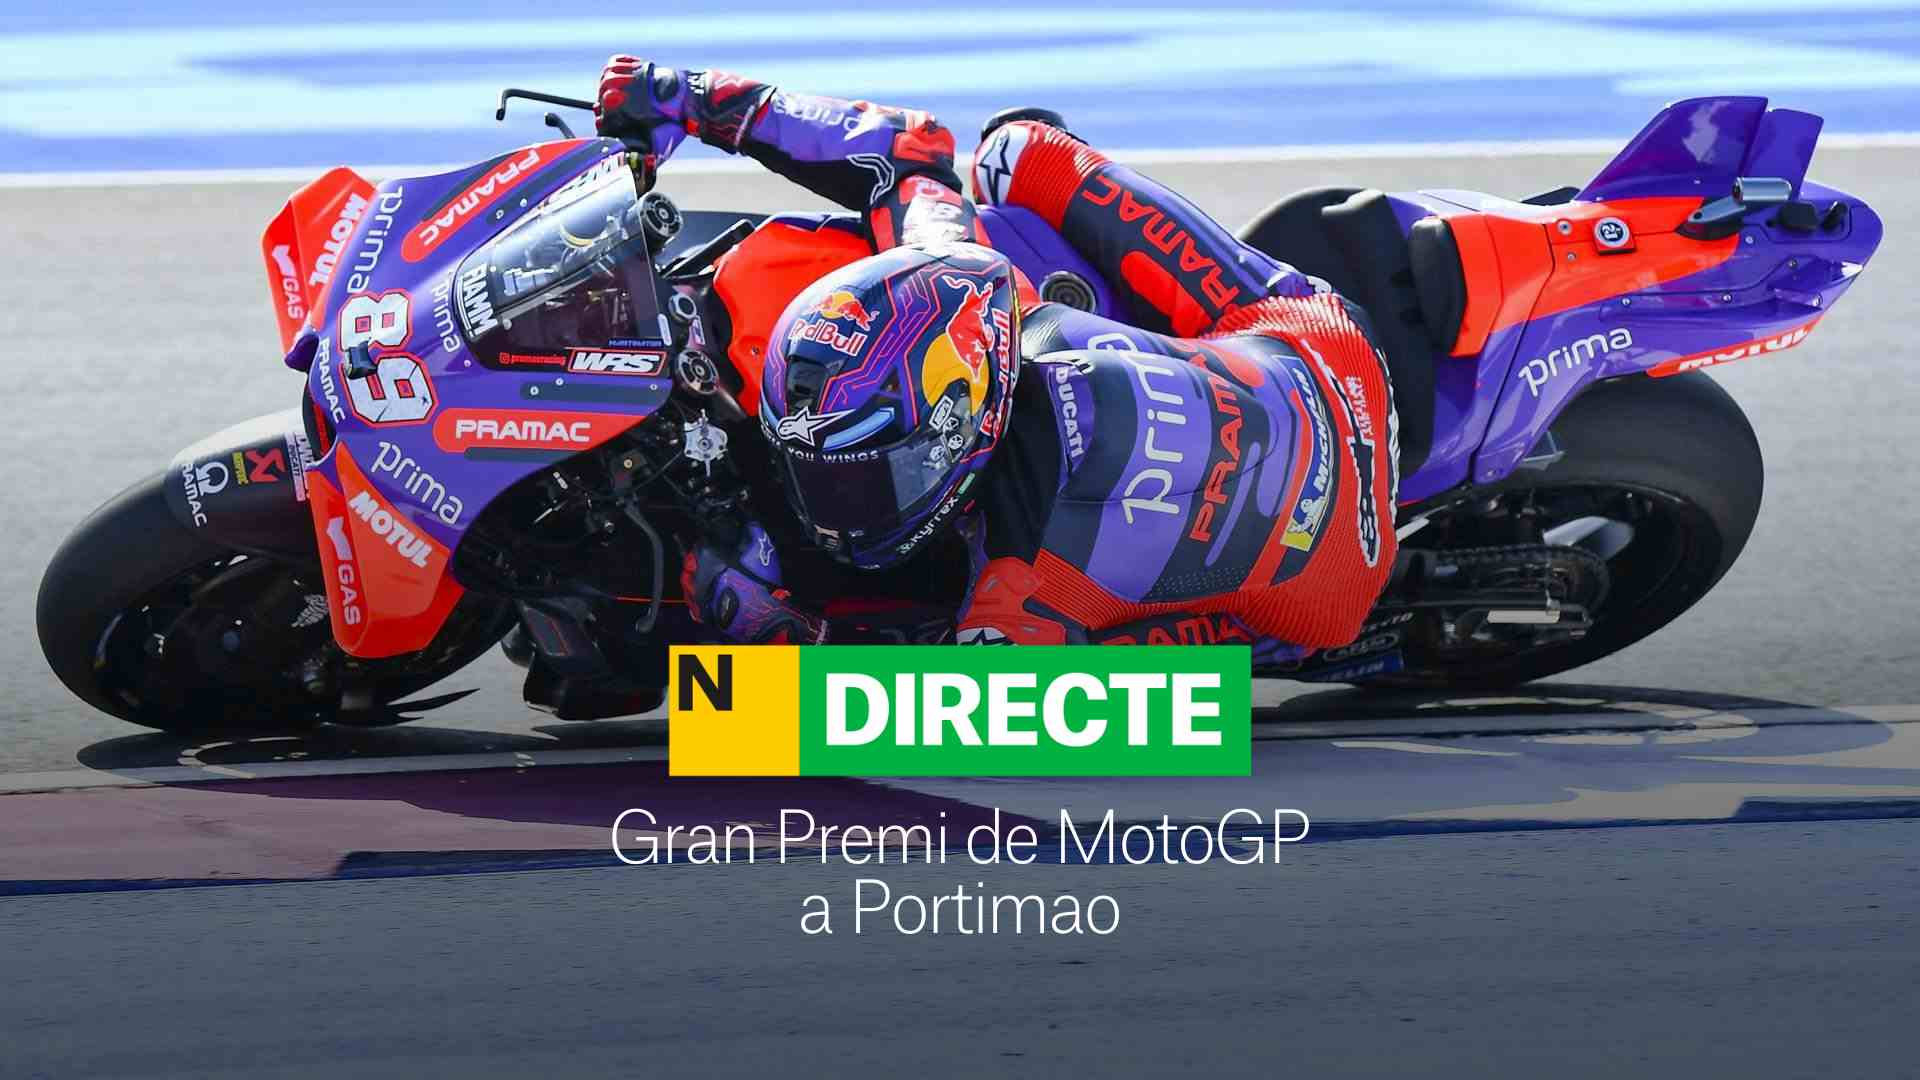 Gran Premio de MotoGP en Portimao, DIRECTO | Resultado y resumen